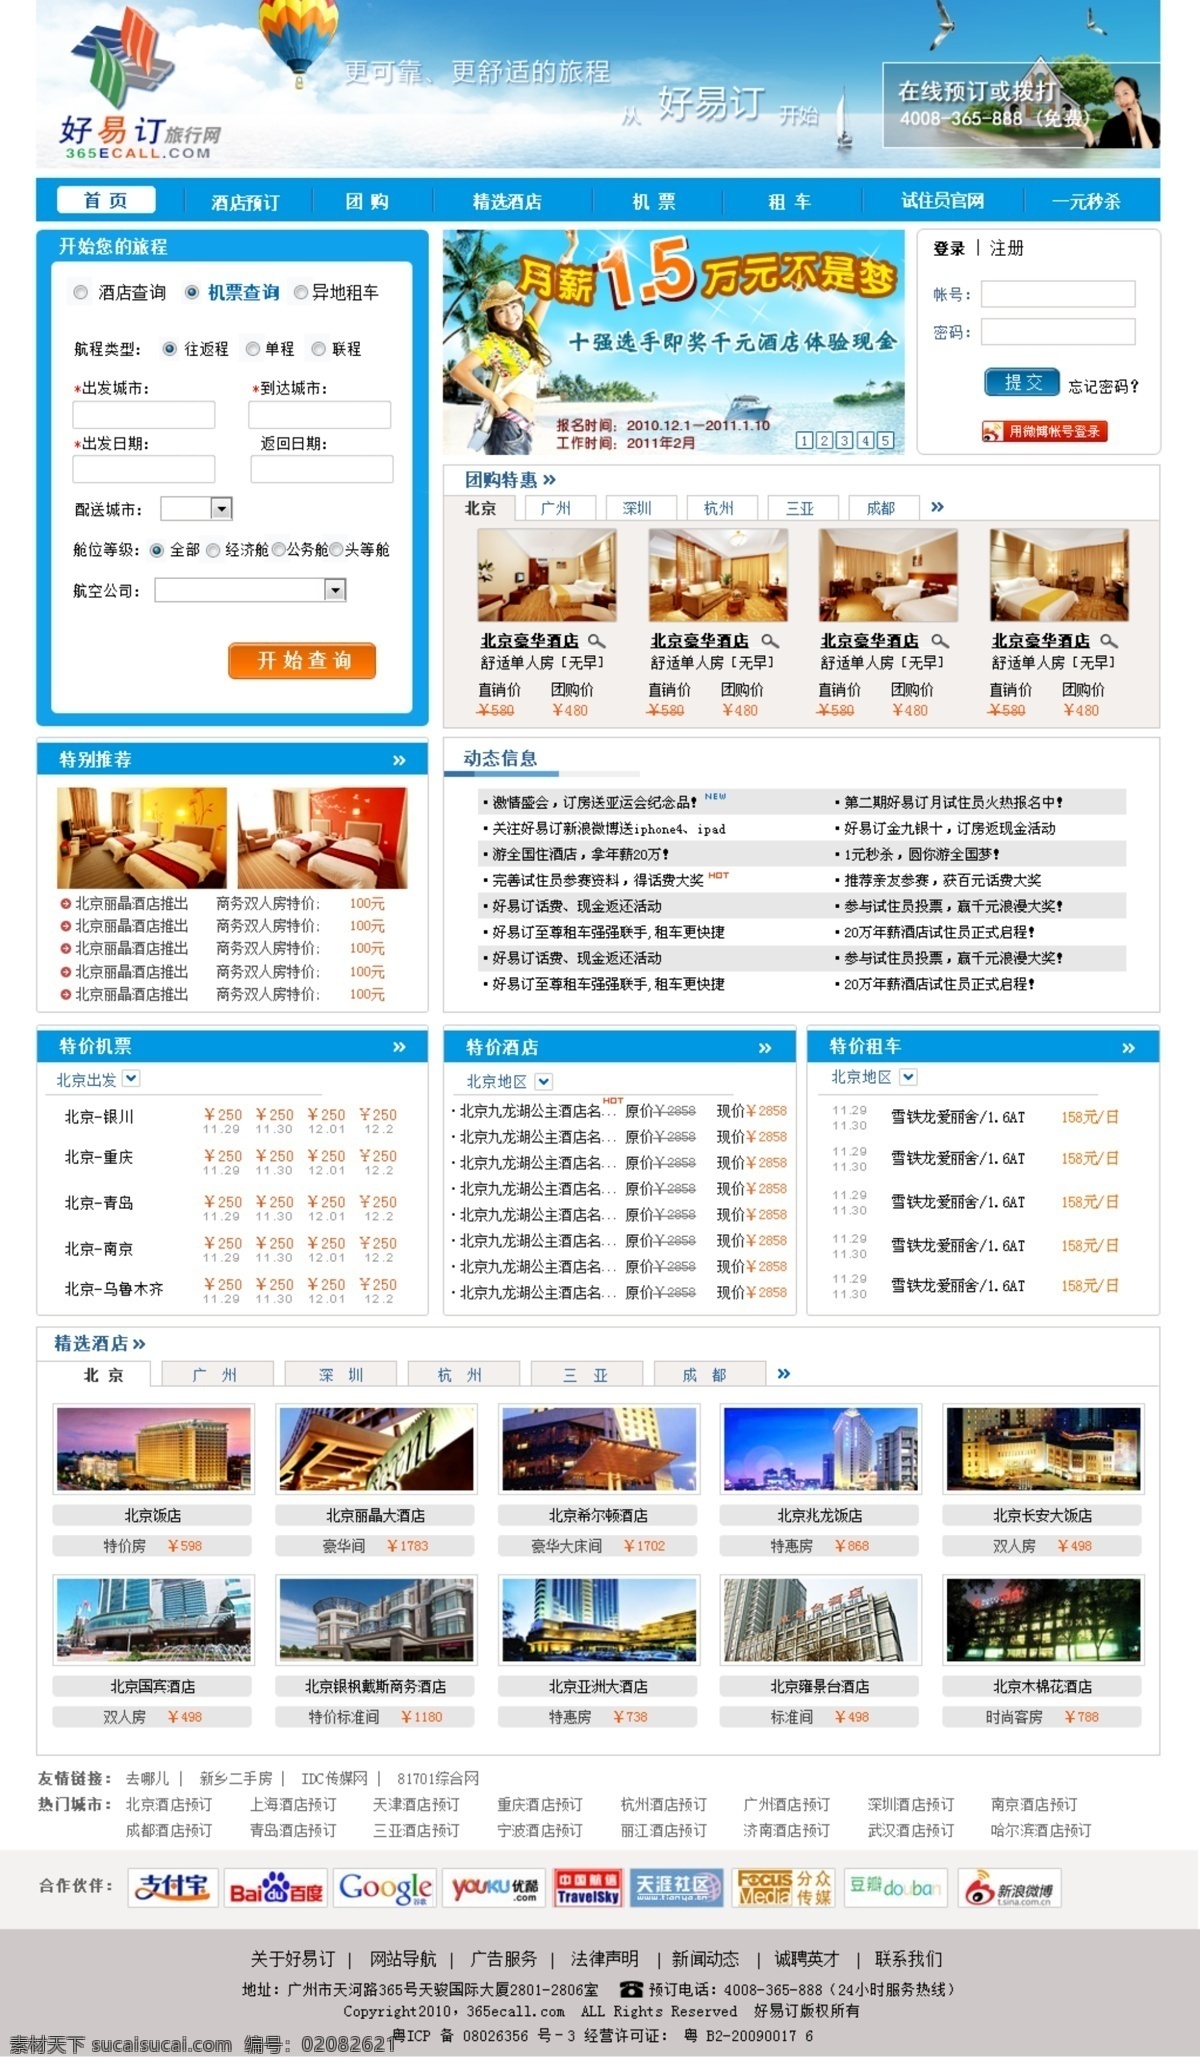 网页设计 网页模板 源文件 中文模版 旅行网页设计 机票预订 租地租车 酒店预订 psd源文件